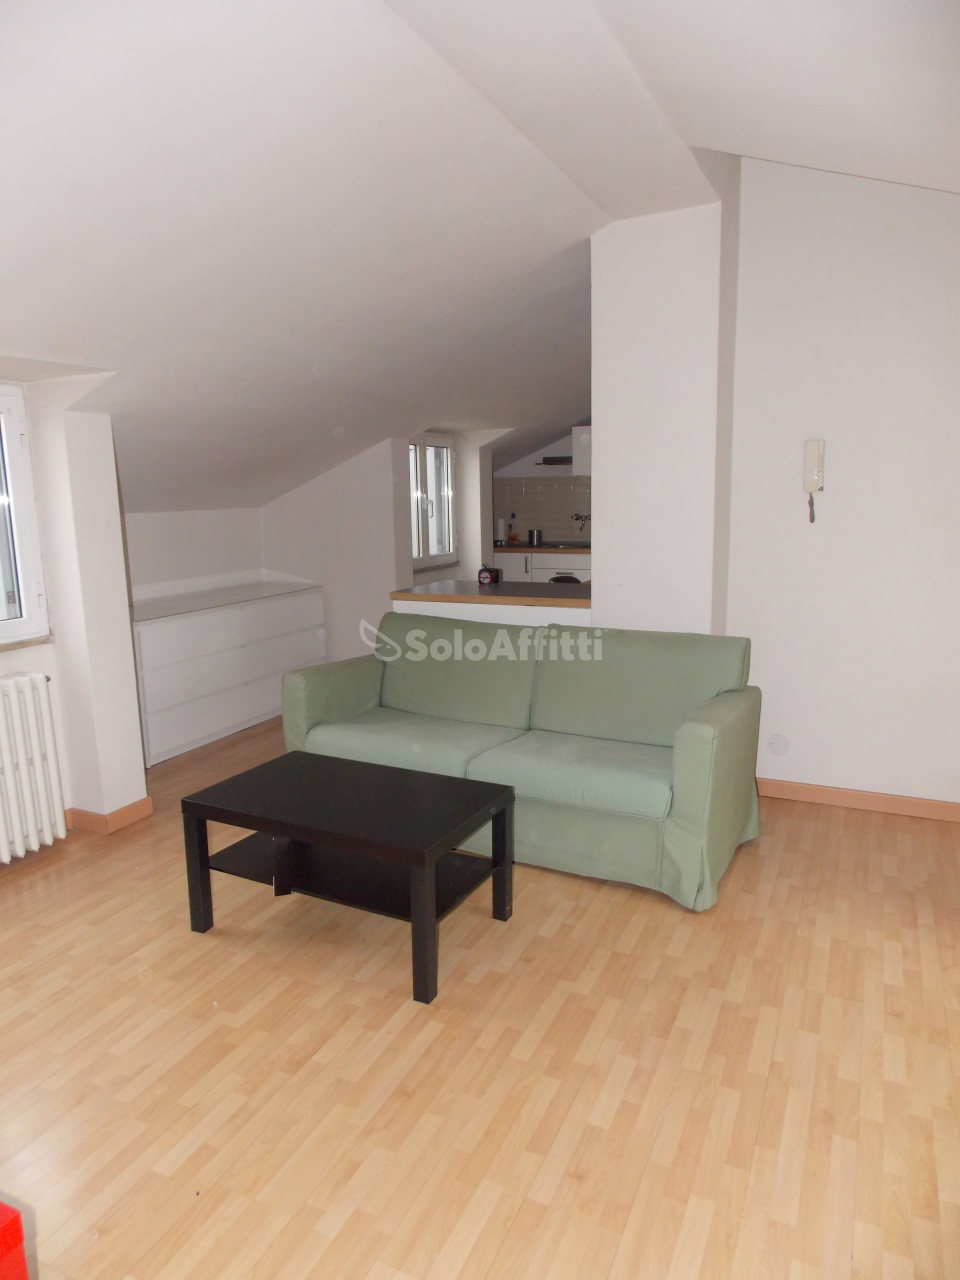 Appartamento in affitto a Novara, 3 locali, prezzo € 600 | CambioCasa.it